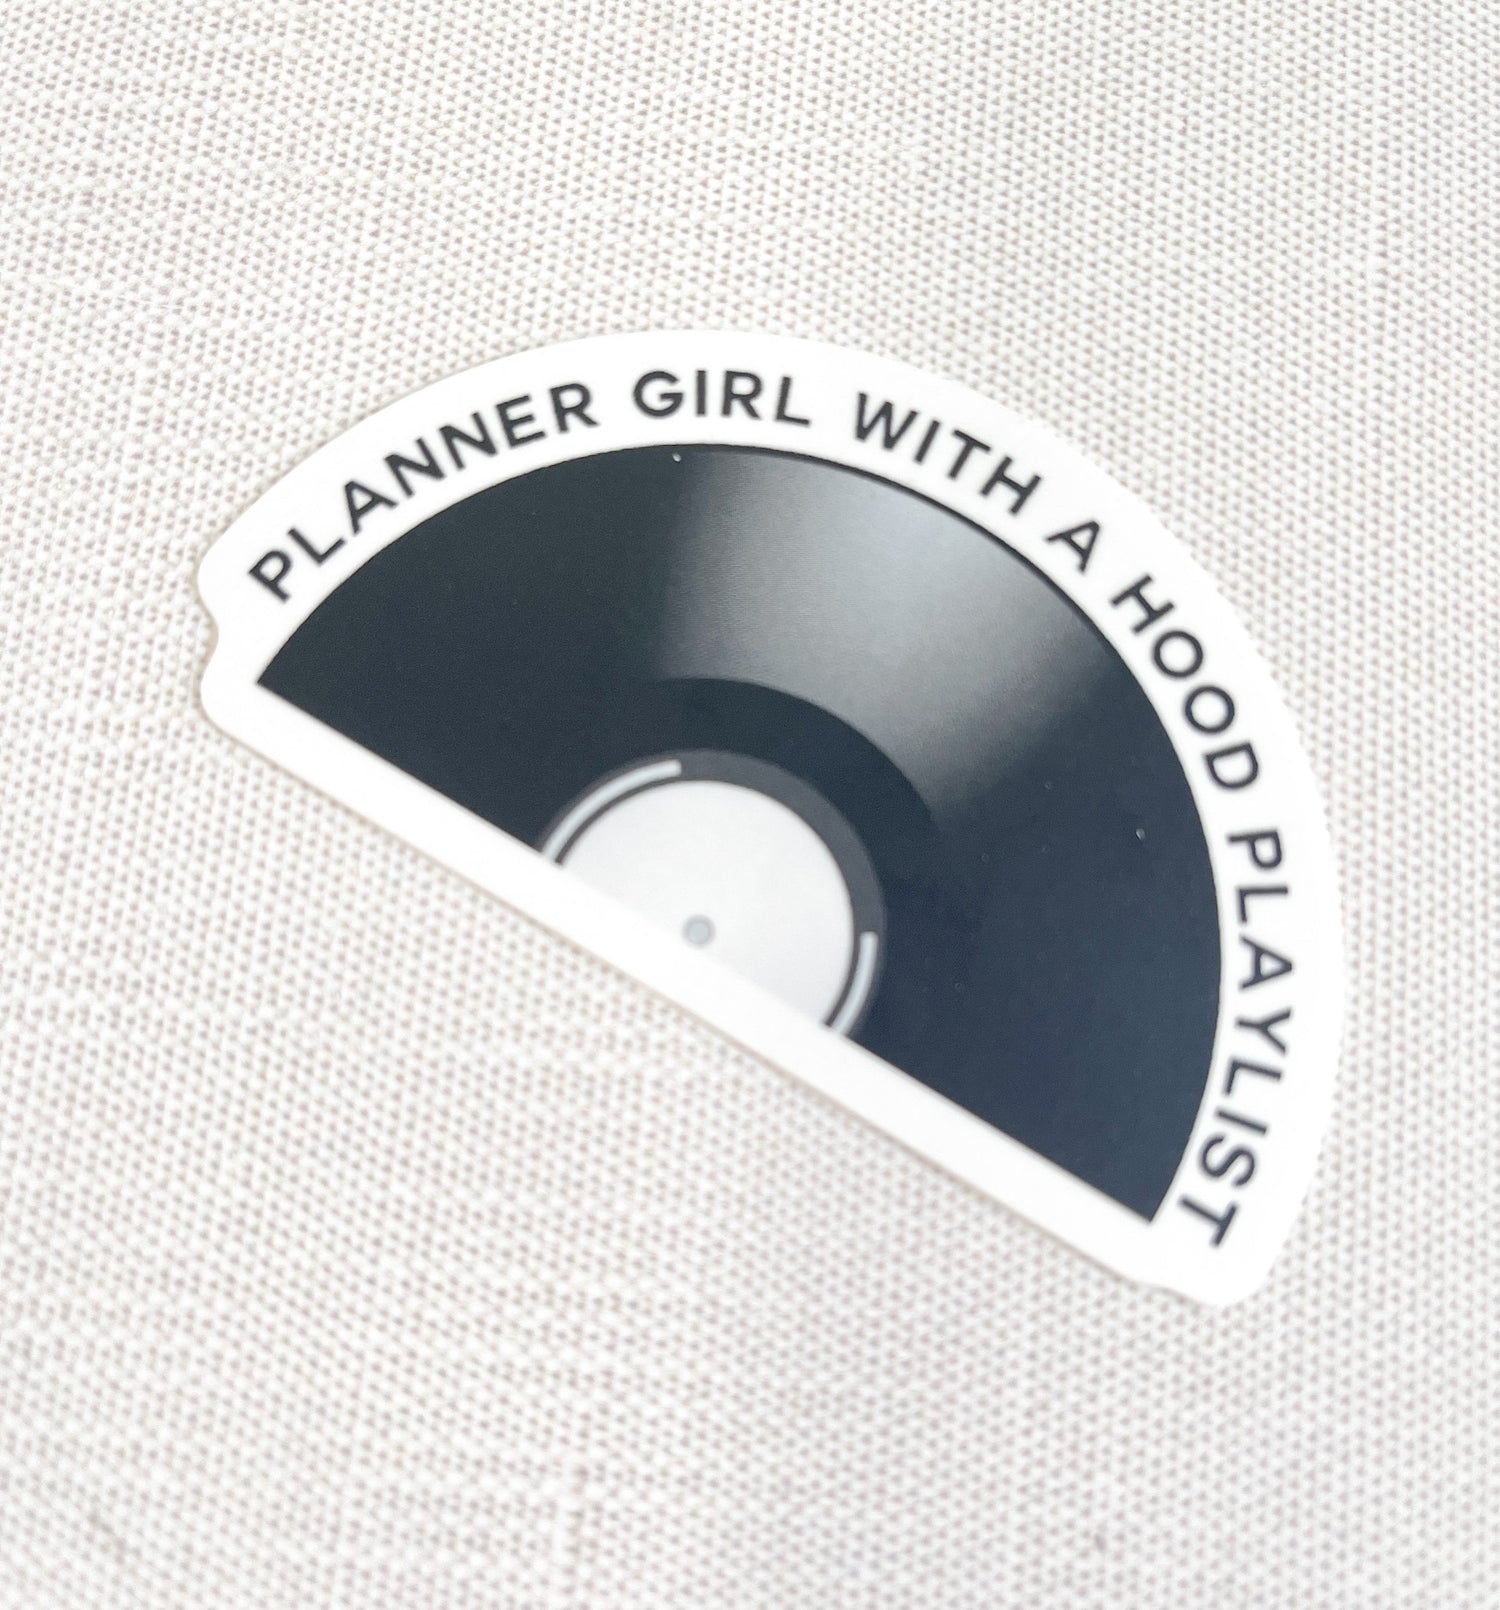 Vinyl Sticker Die Cuts